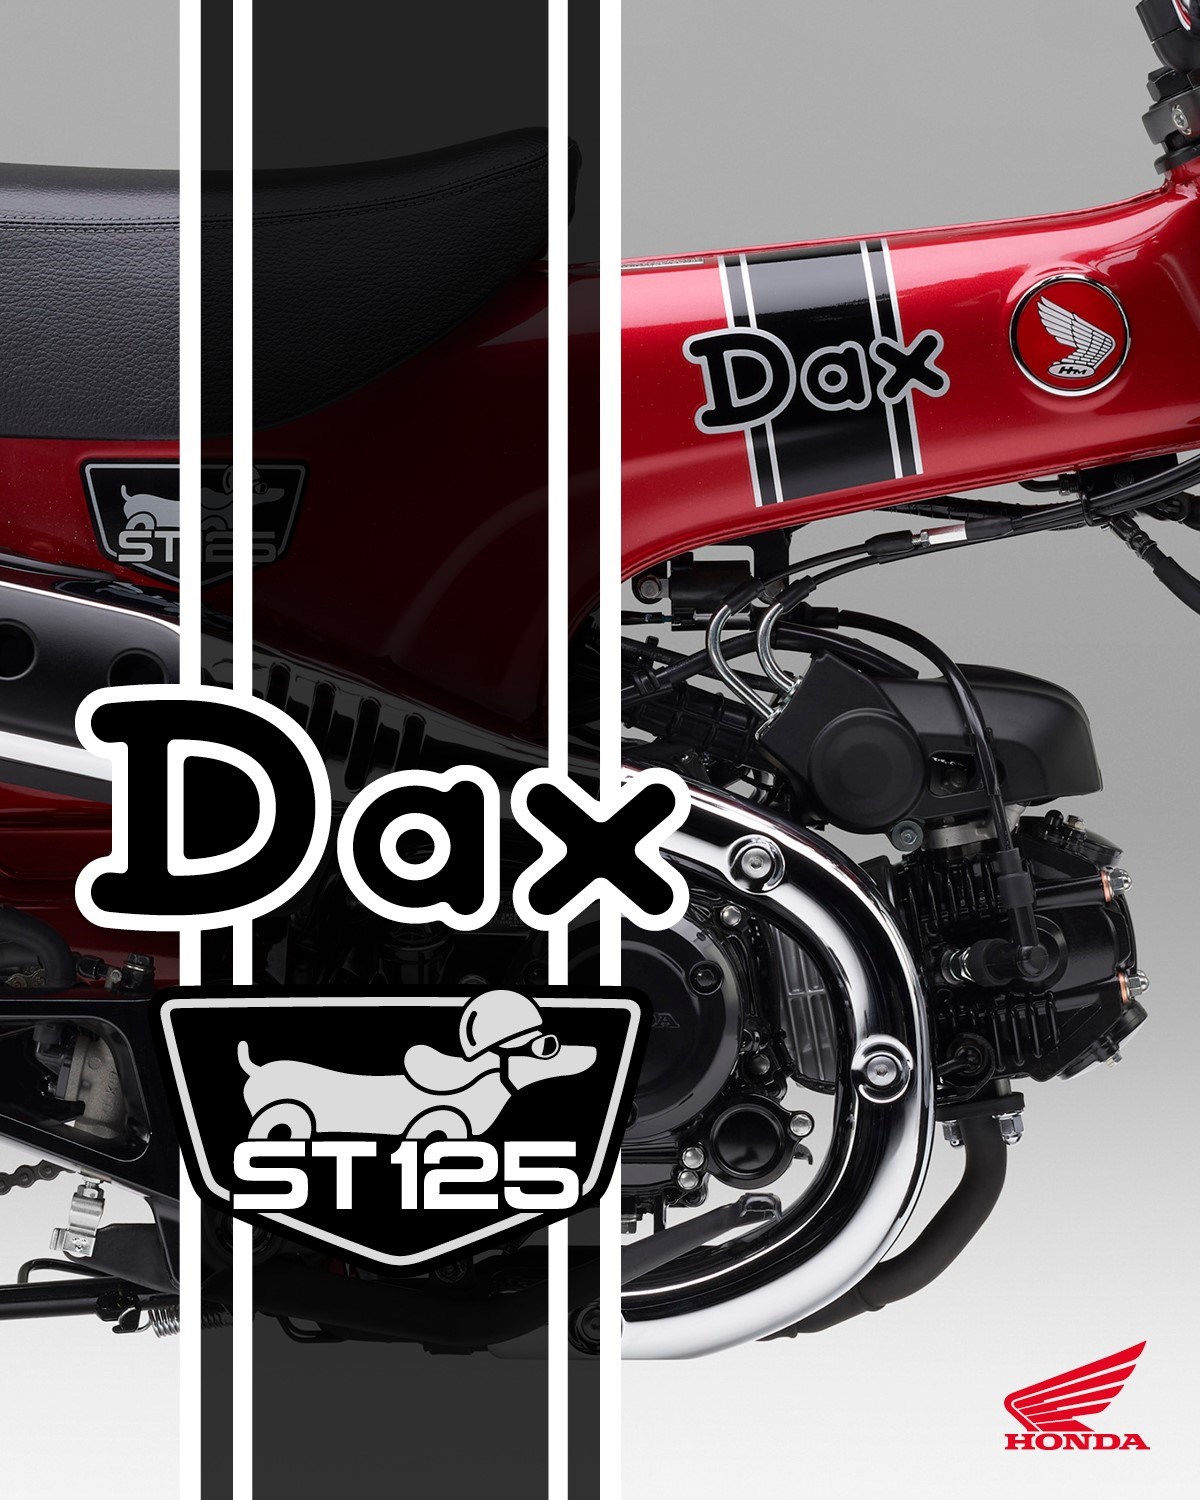 Le nouveau Honda Dax ST125 fait son grand retour ! - Mini4temps.fr